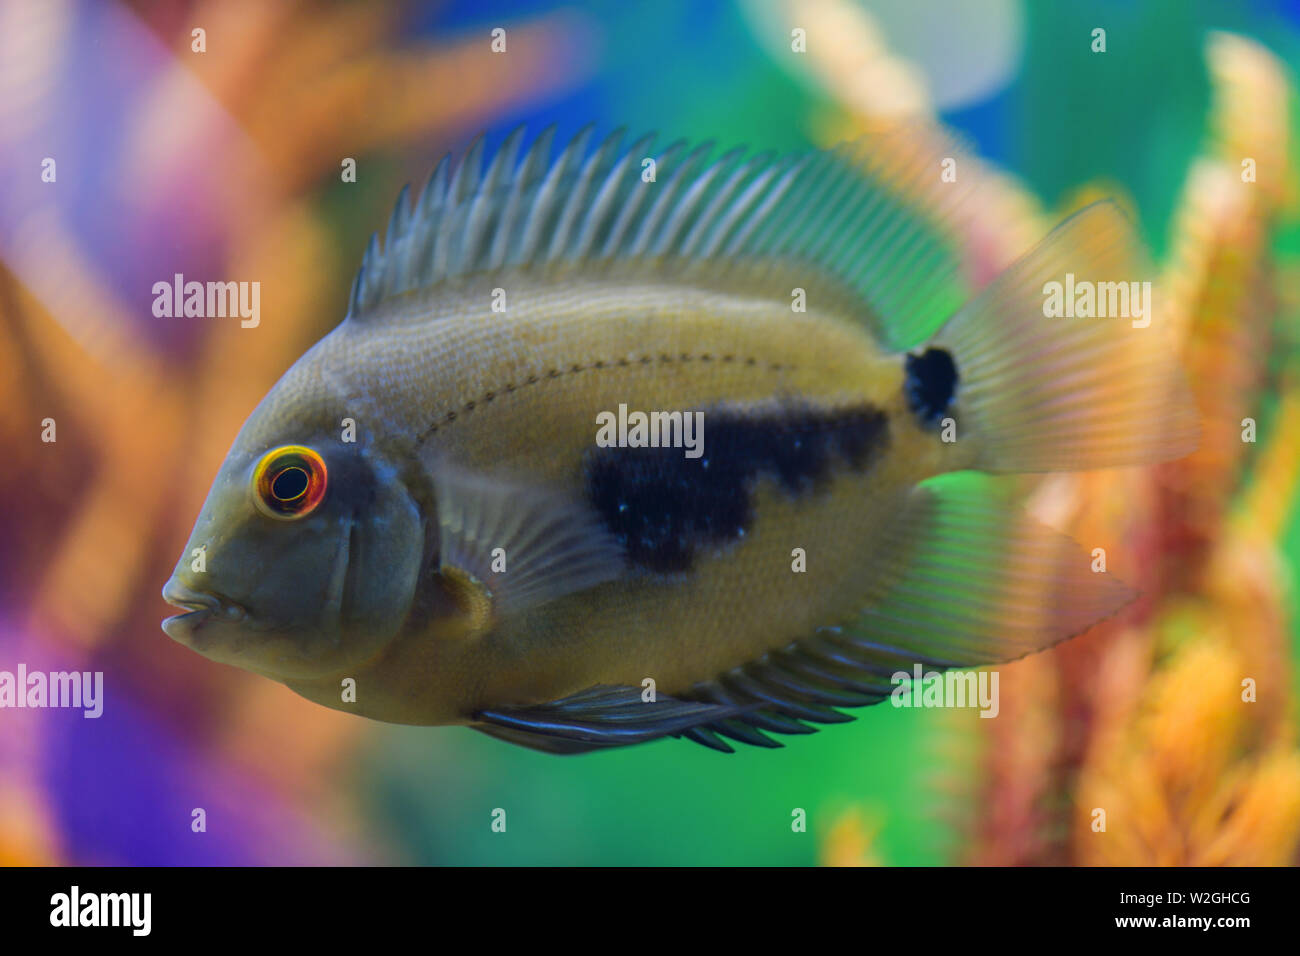 Uaru amphiacanthoide schwarz-gefleckte Fisch schwimmt in einem transparenten Aquarium mit einem schönen hellen Design Stockfoto